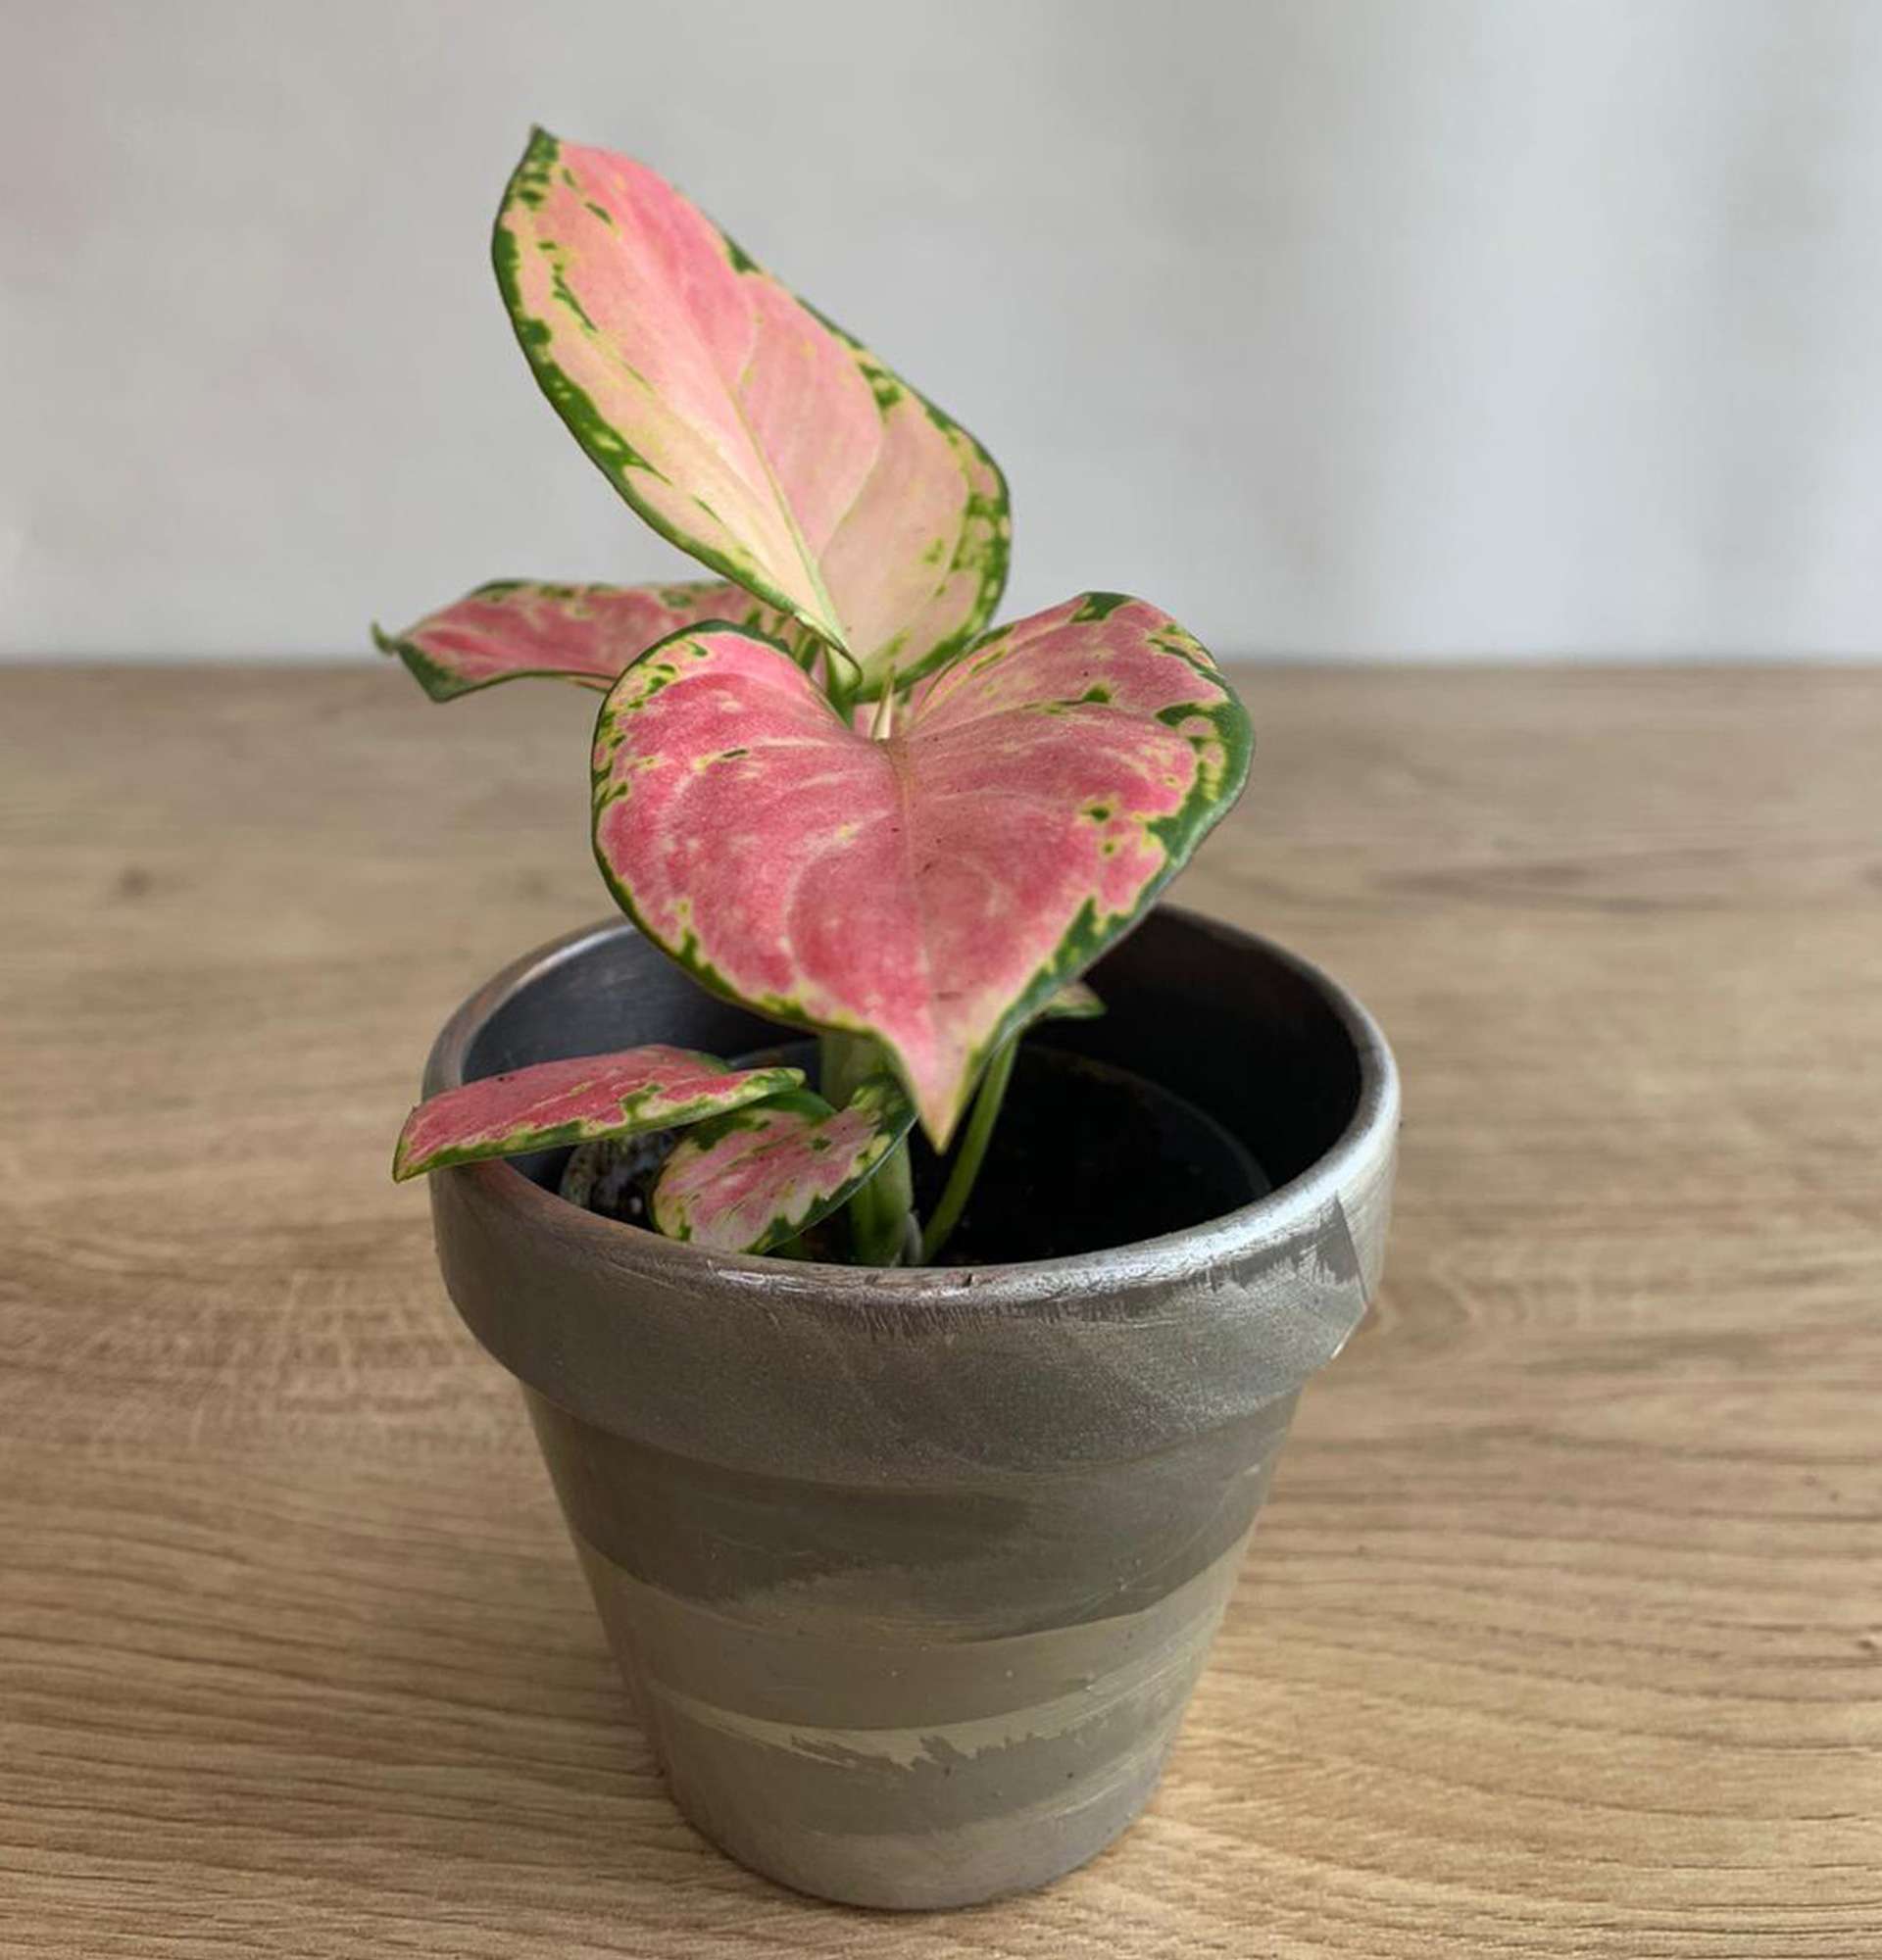  комнатная Аглаонема фото – растение с красноватыми листьями